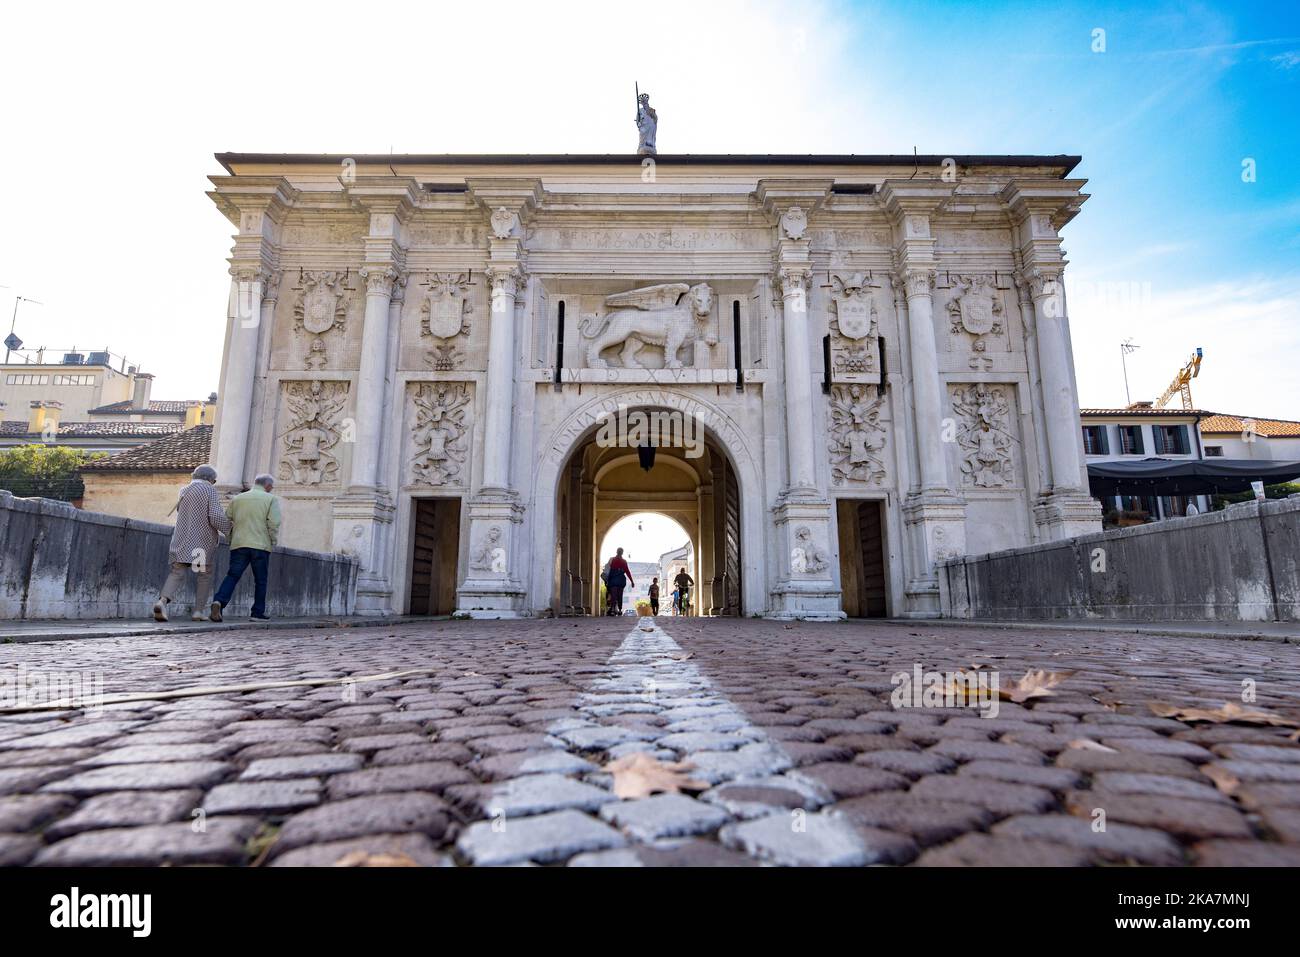 Treviso: Porta San Tomaso y la arquitectura del monumento histórico de la ciudad de Treviso - Italia Foto de stock